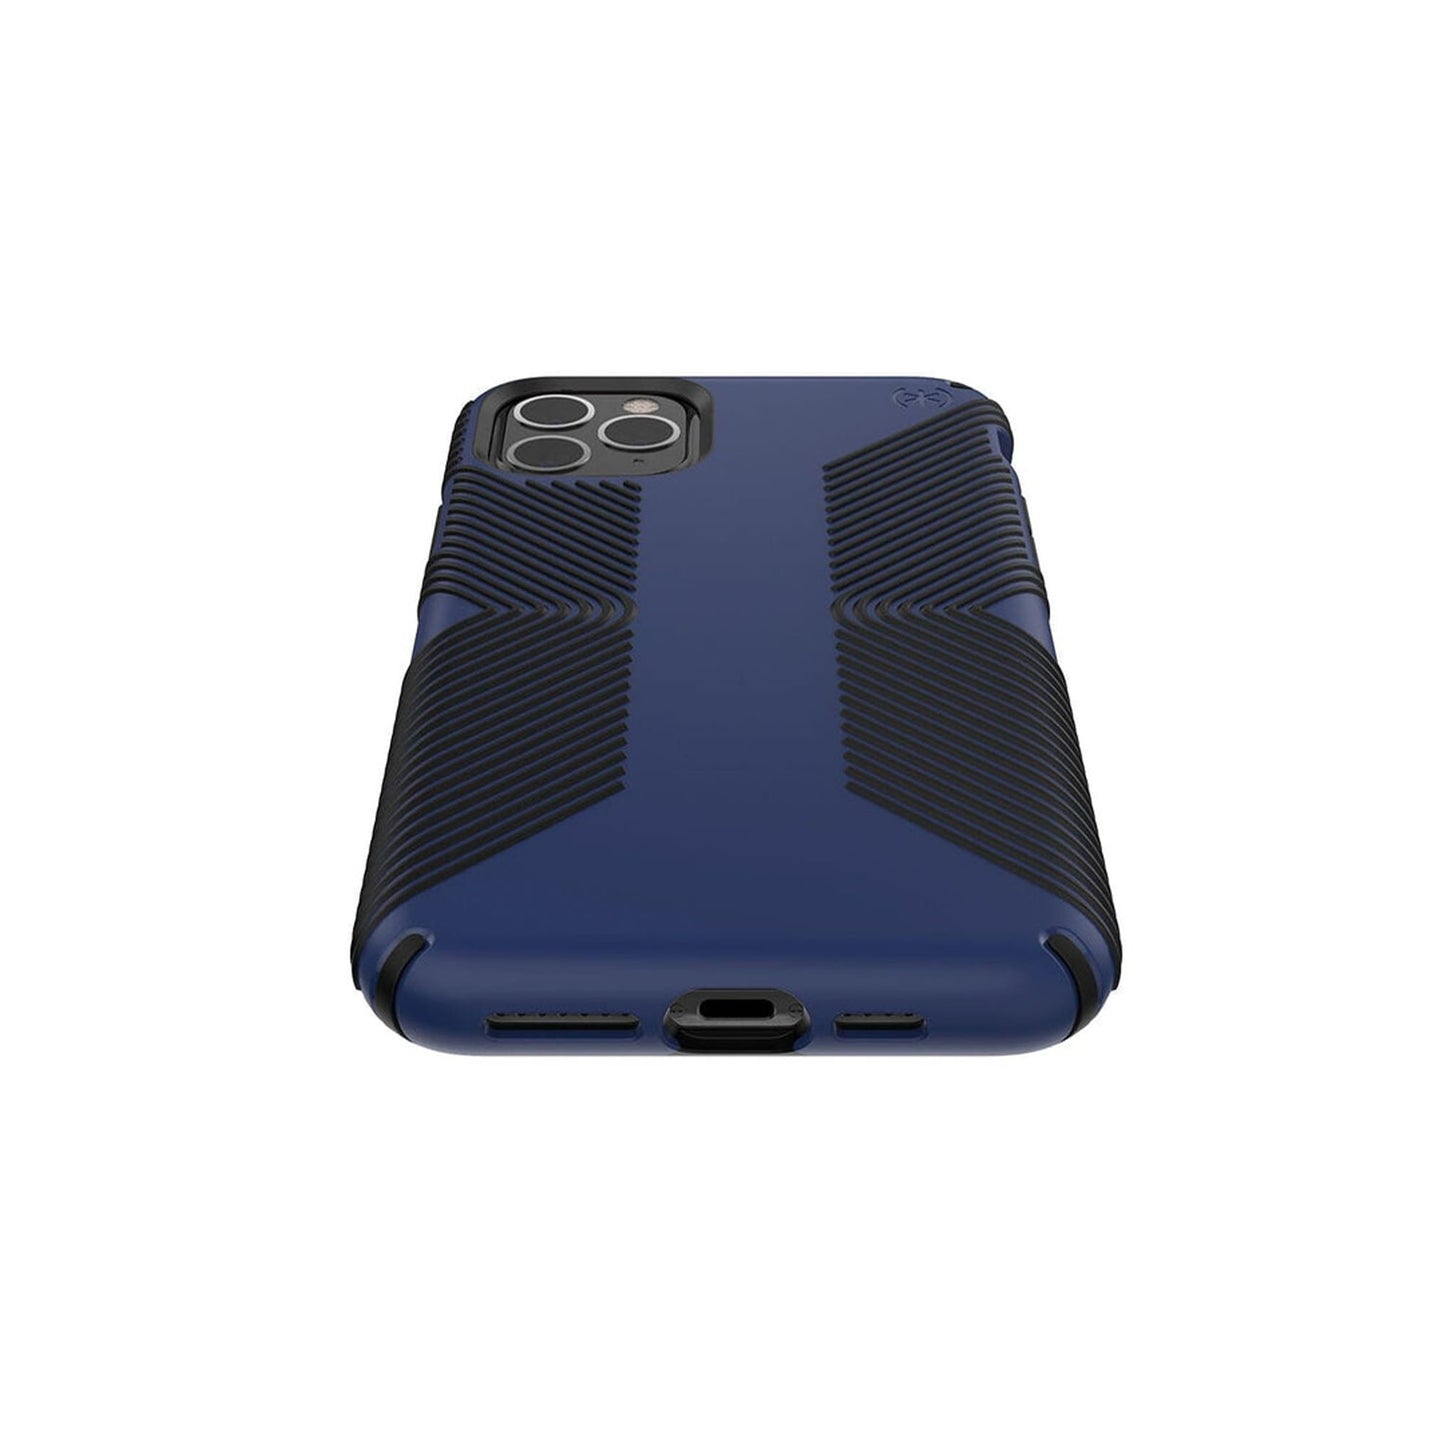 SPECK Presidio Pro Case for iPhone 11 Pro Max - Coastal Blue/Black